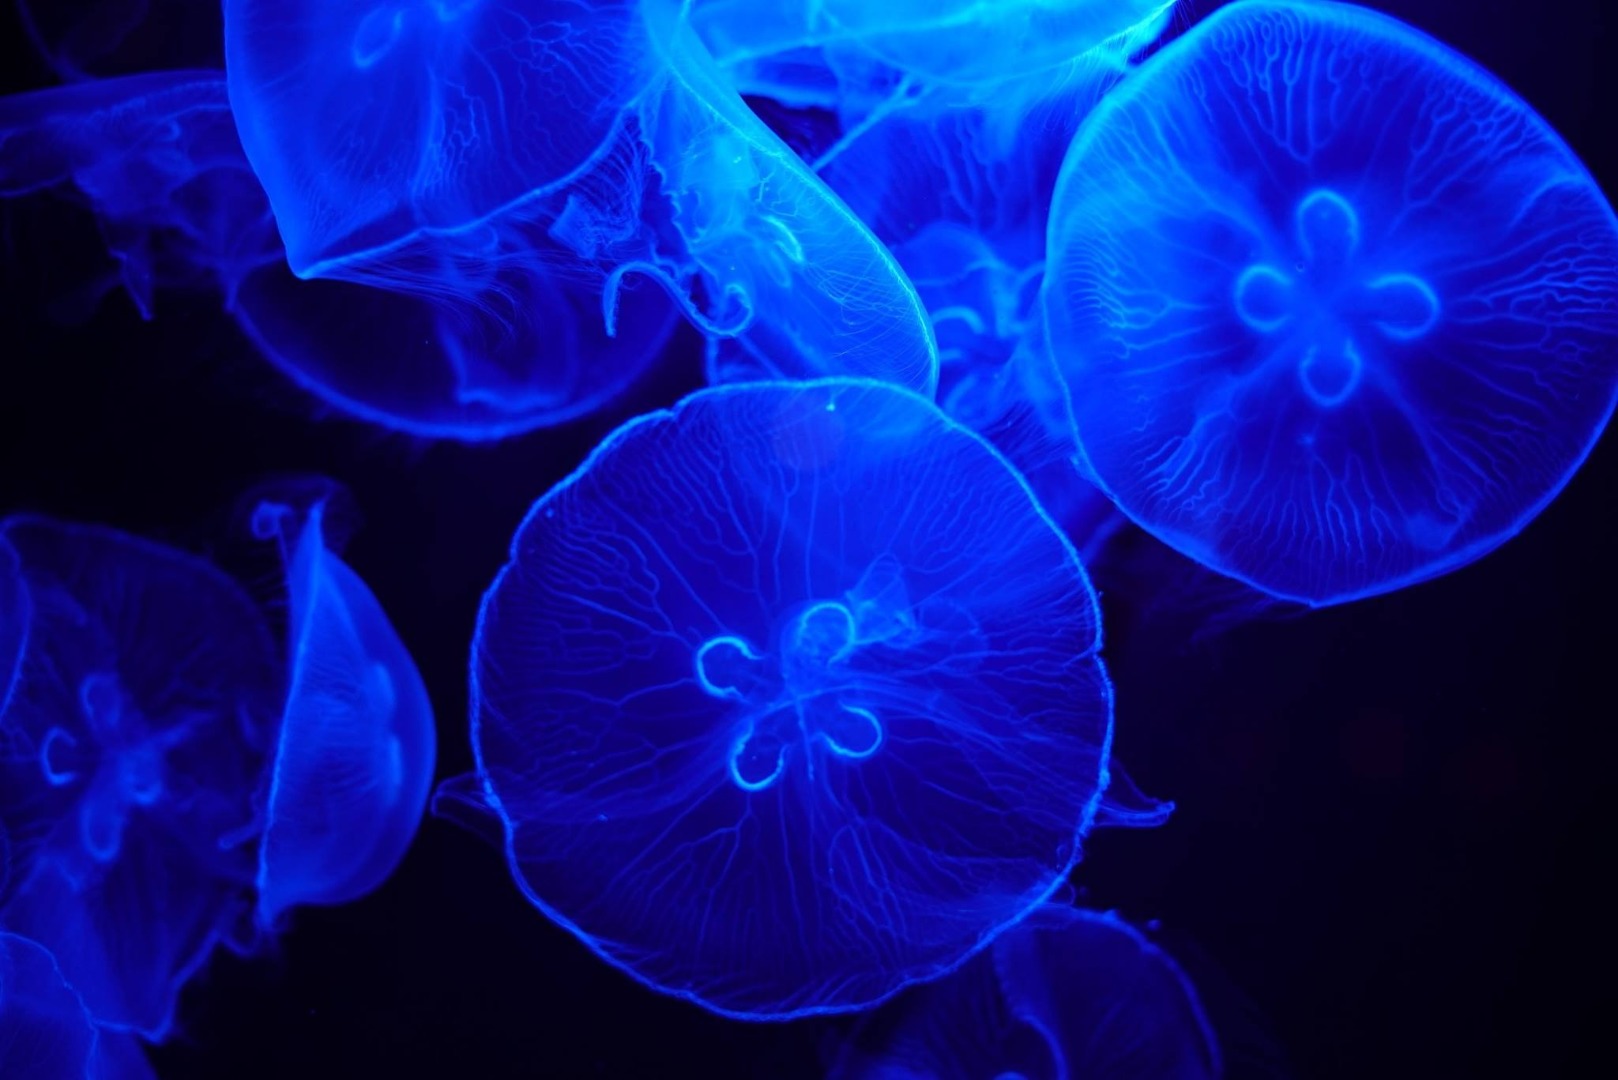 田中 克之が投稿したフォト 沖縄美ら海水族館でのお気に入りの1枚 クラゲが綺麗すぎました 19 08 09 16 26 06 Limia リミア